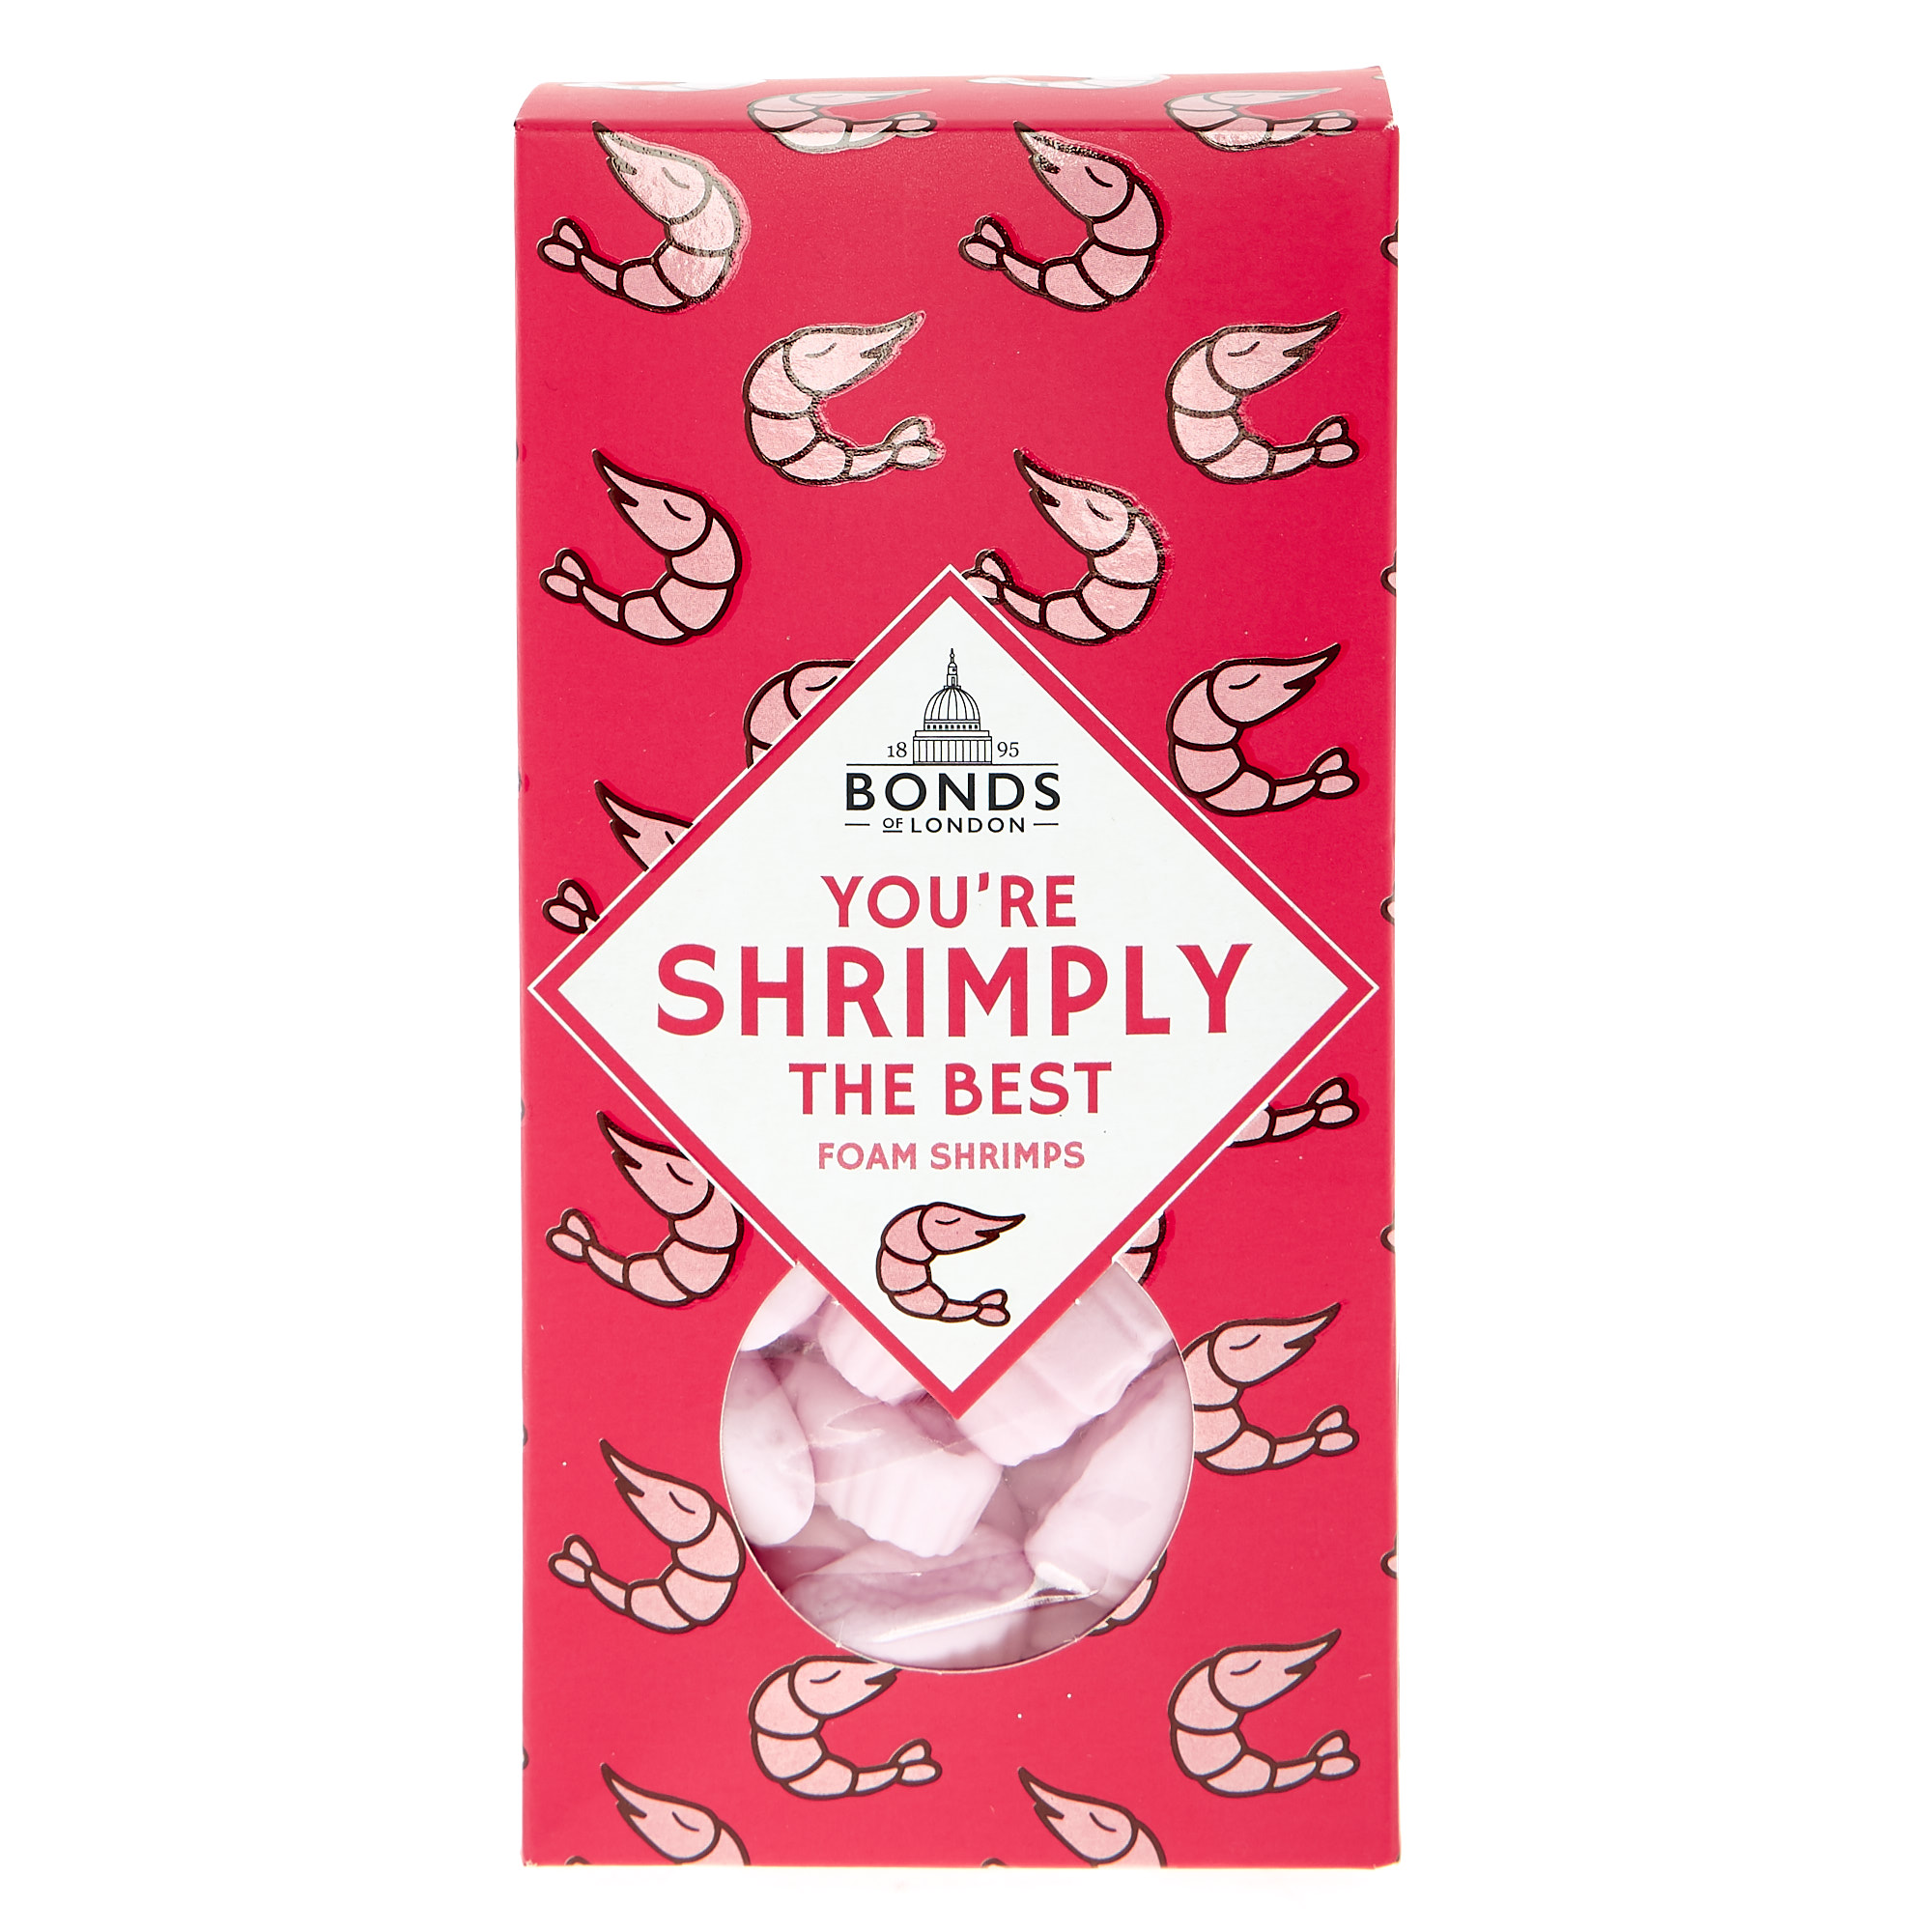 Bonds of London Shrimply the Best Foam Shrimps 160g